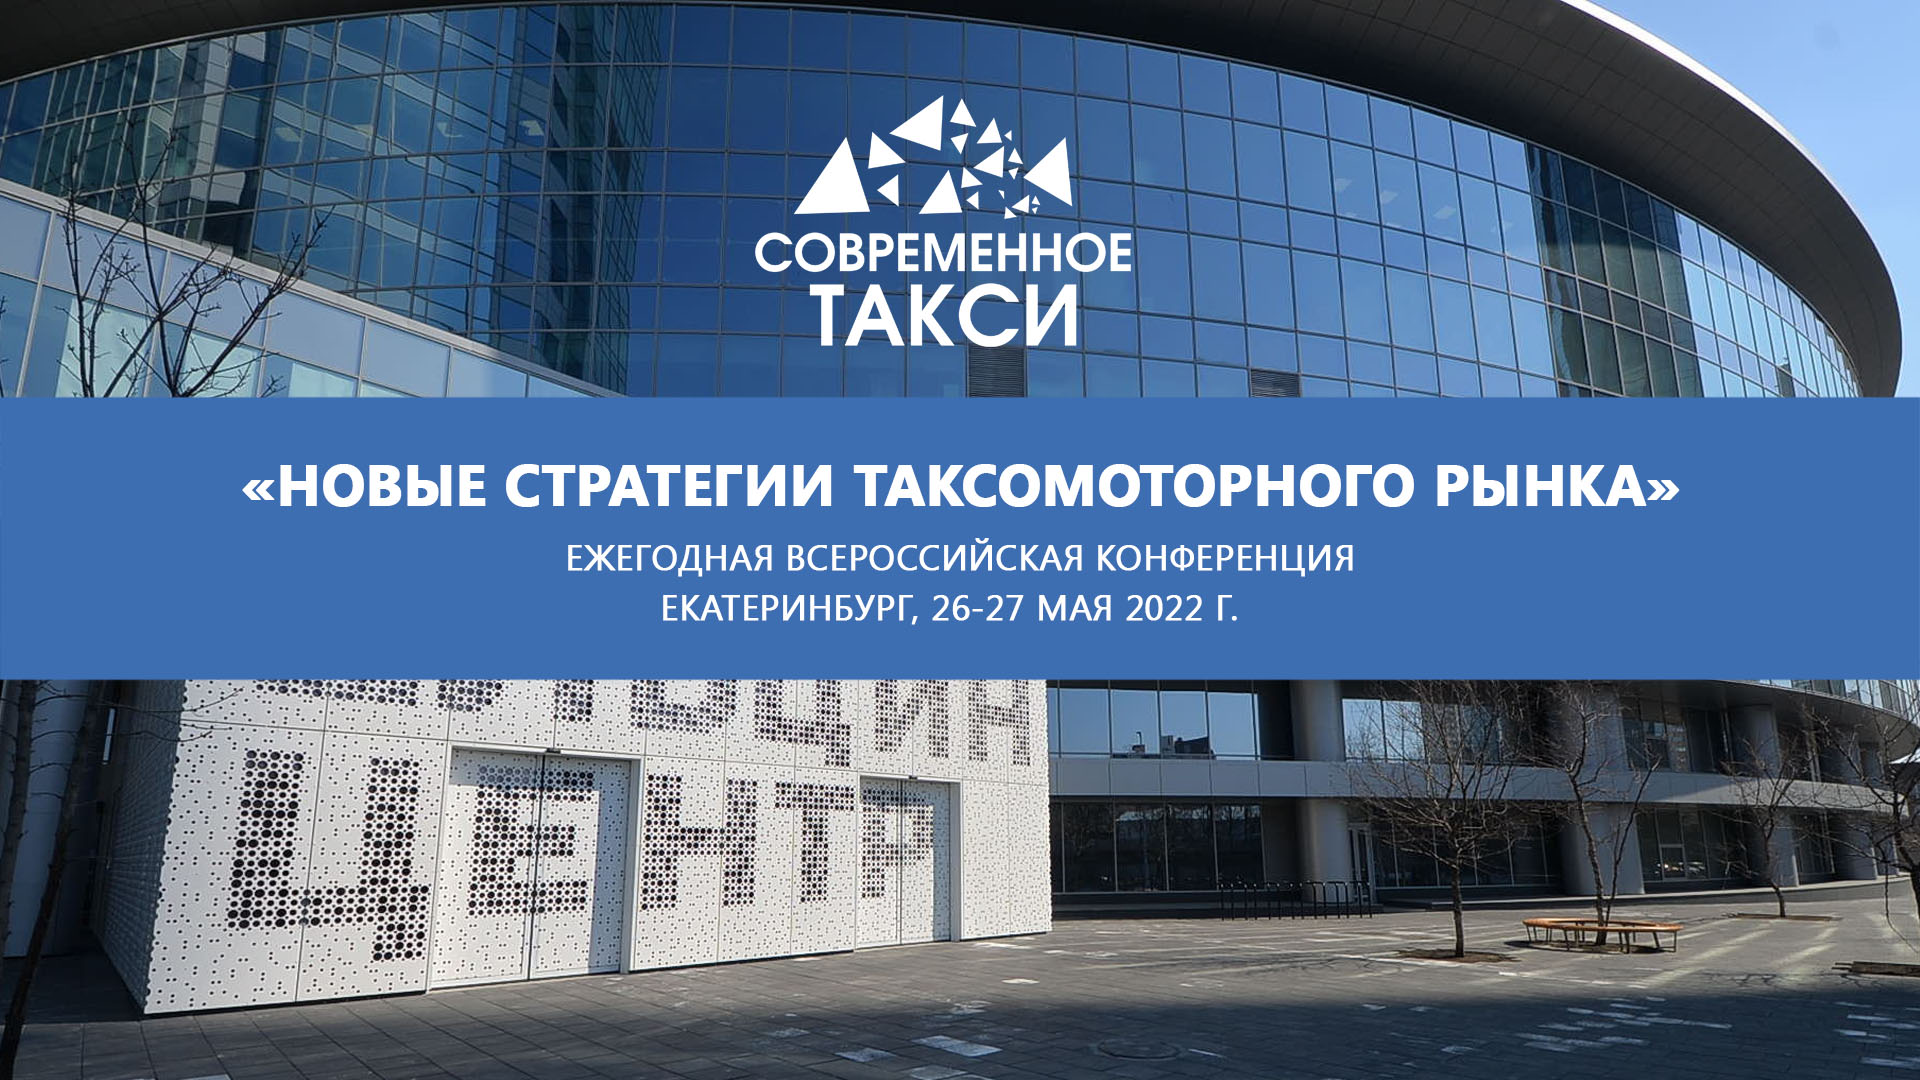 В конце мая в Екатеринбурге обсудят современное такси и новые стратегии развития таксомоторного рынка